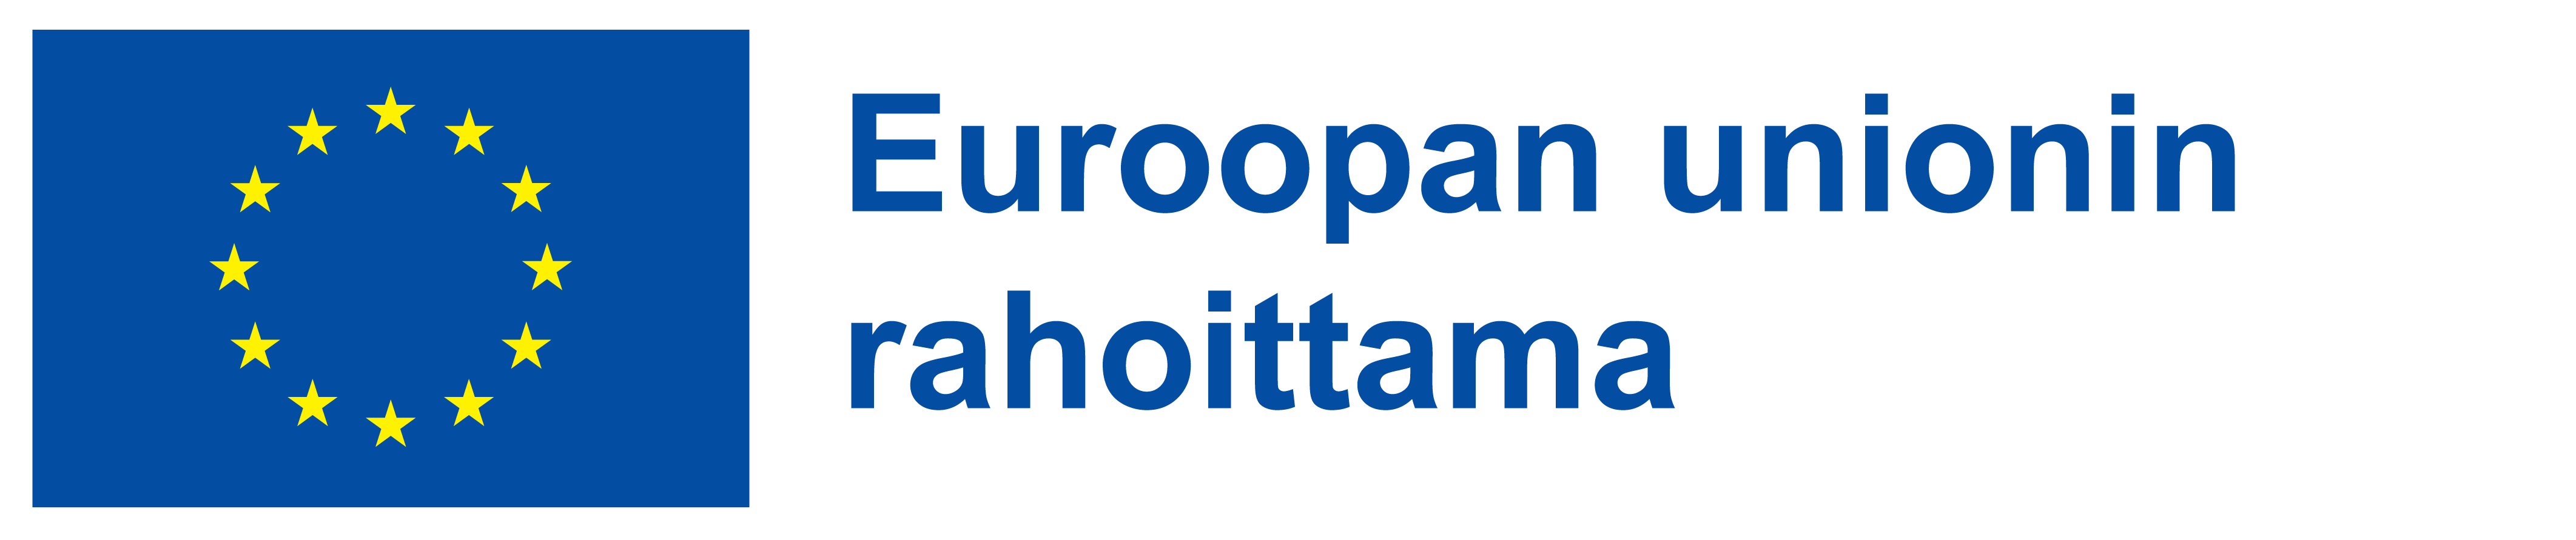 Euroopan unionin rahoittama -logo